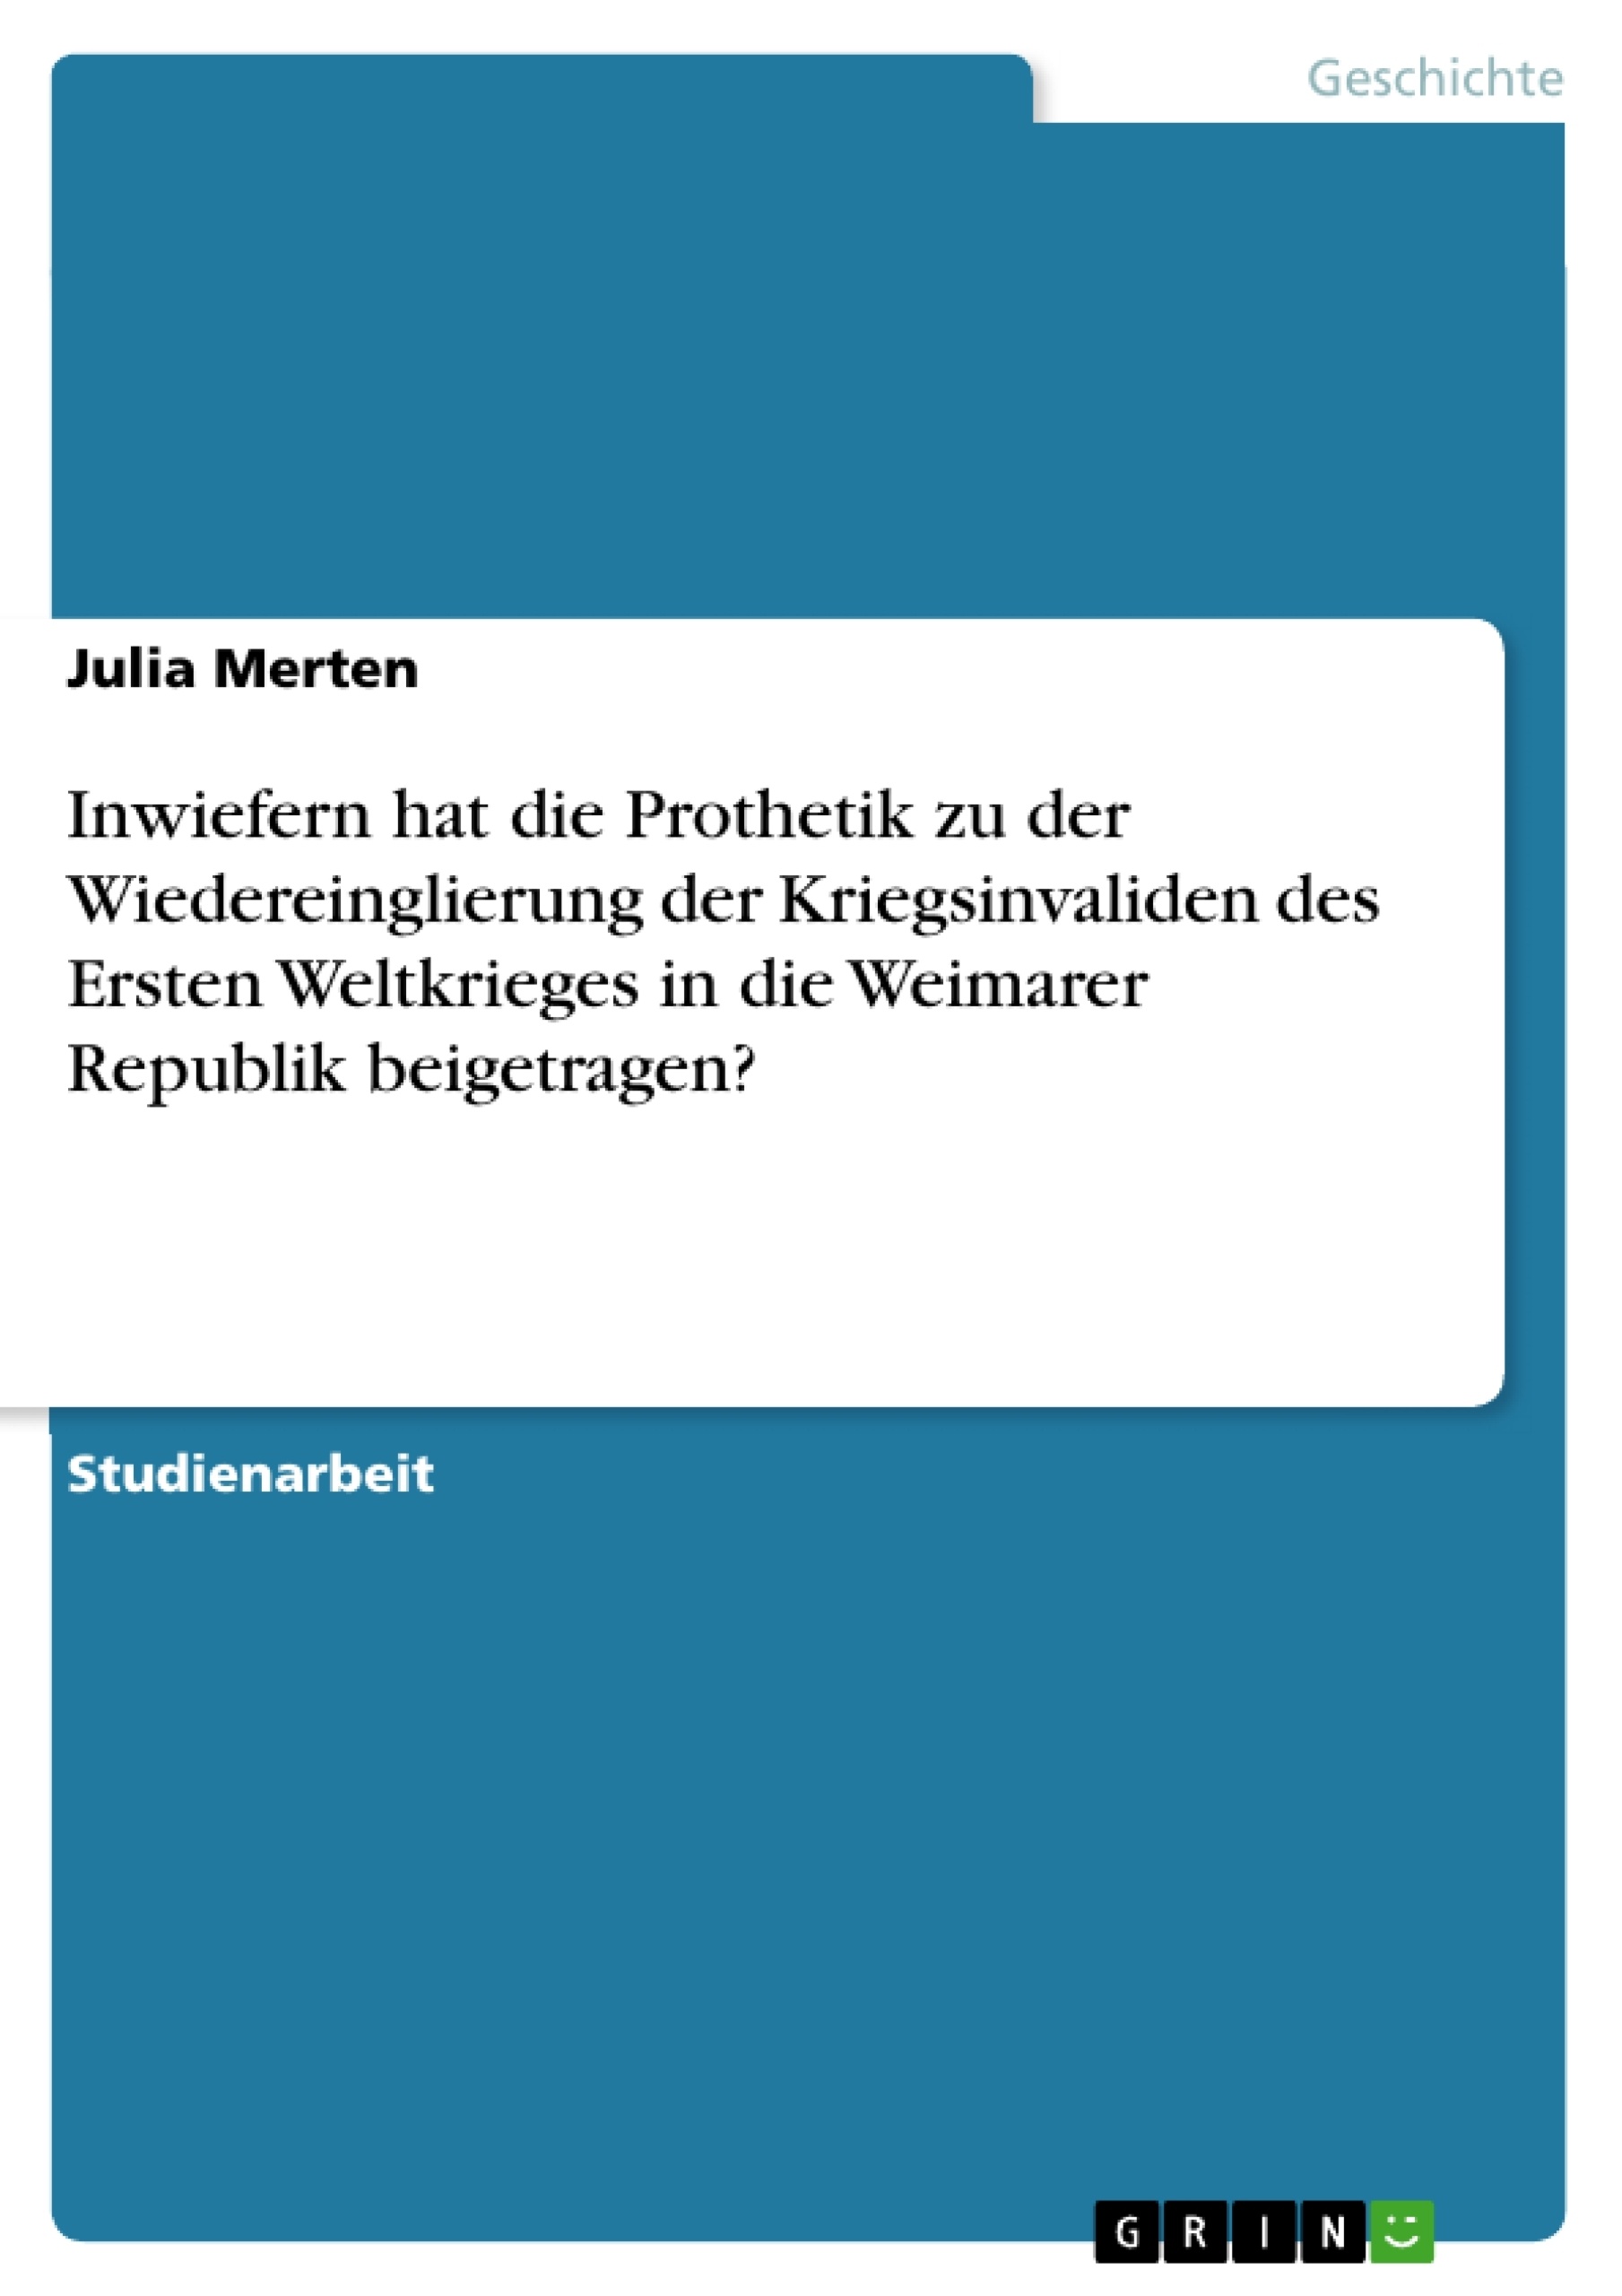 Título: Inwiefern hat die Prothetik zu der Wiedereinglierung der Kriegsinvaliden des Ersten Weltkrieges in die Weimarer Republik beigetragen?